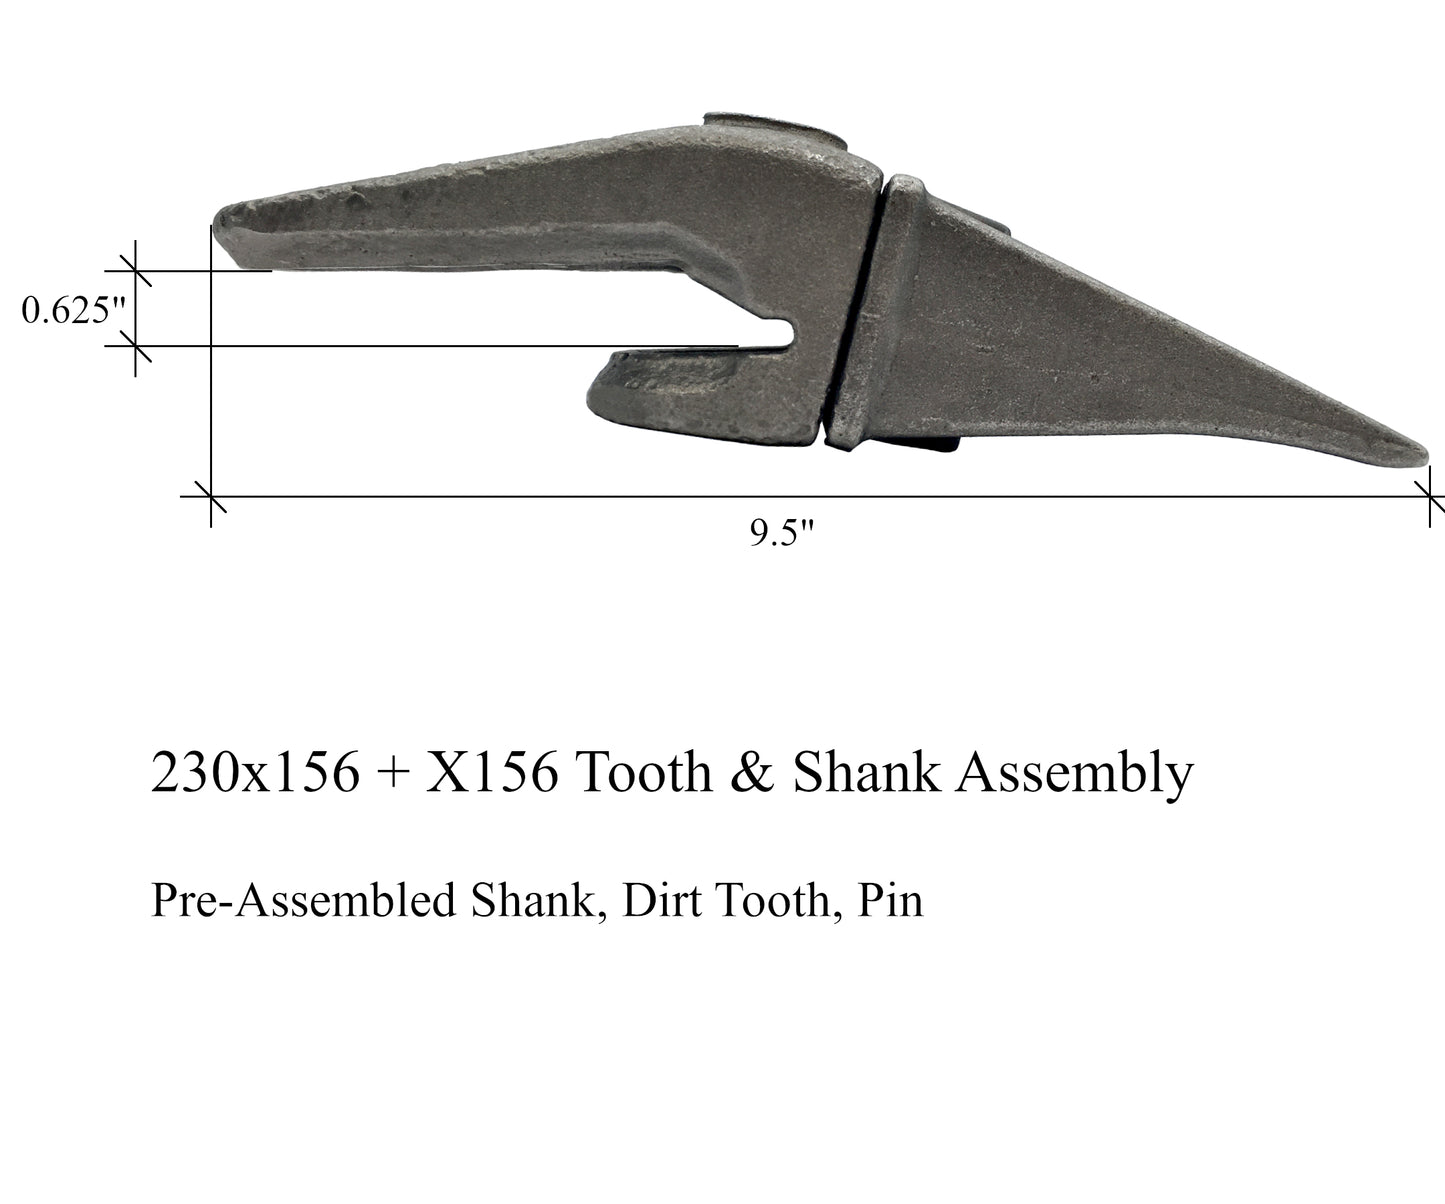 Conjunto de vástago, diente y pasador 230x156, X156S y P156 para labio de 5/8" - 'Estilo Hensley' para cucharones de miniexcavadora